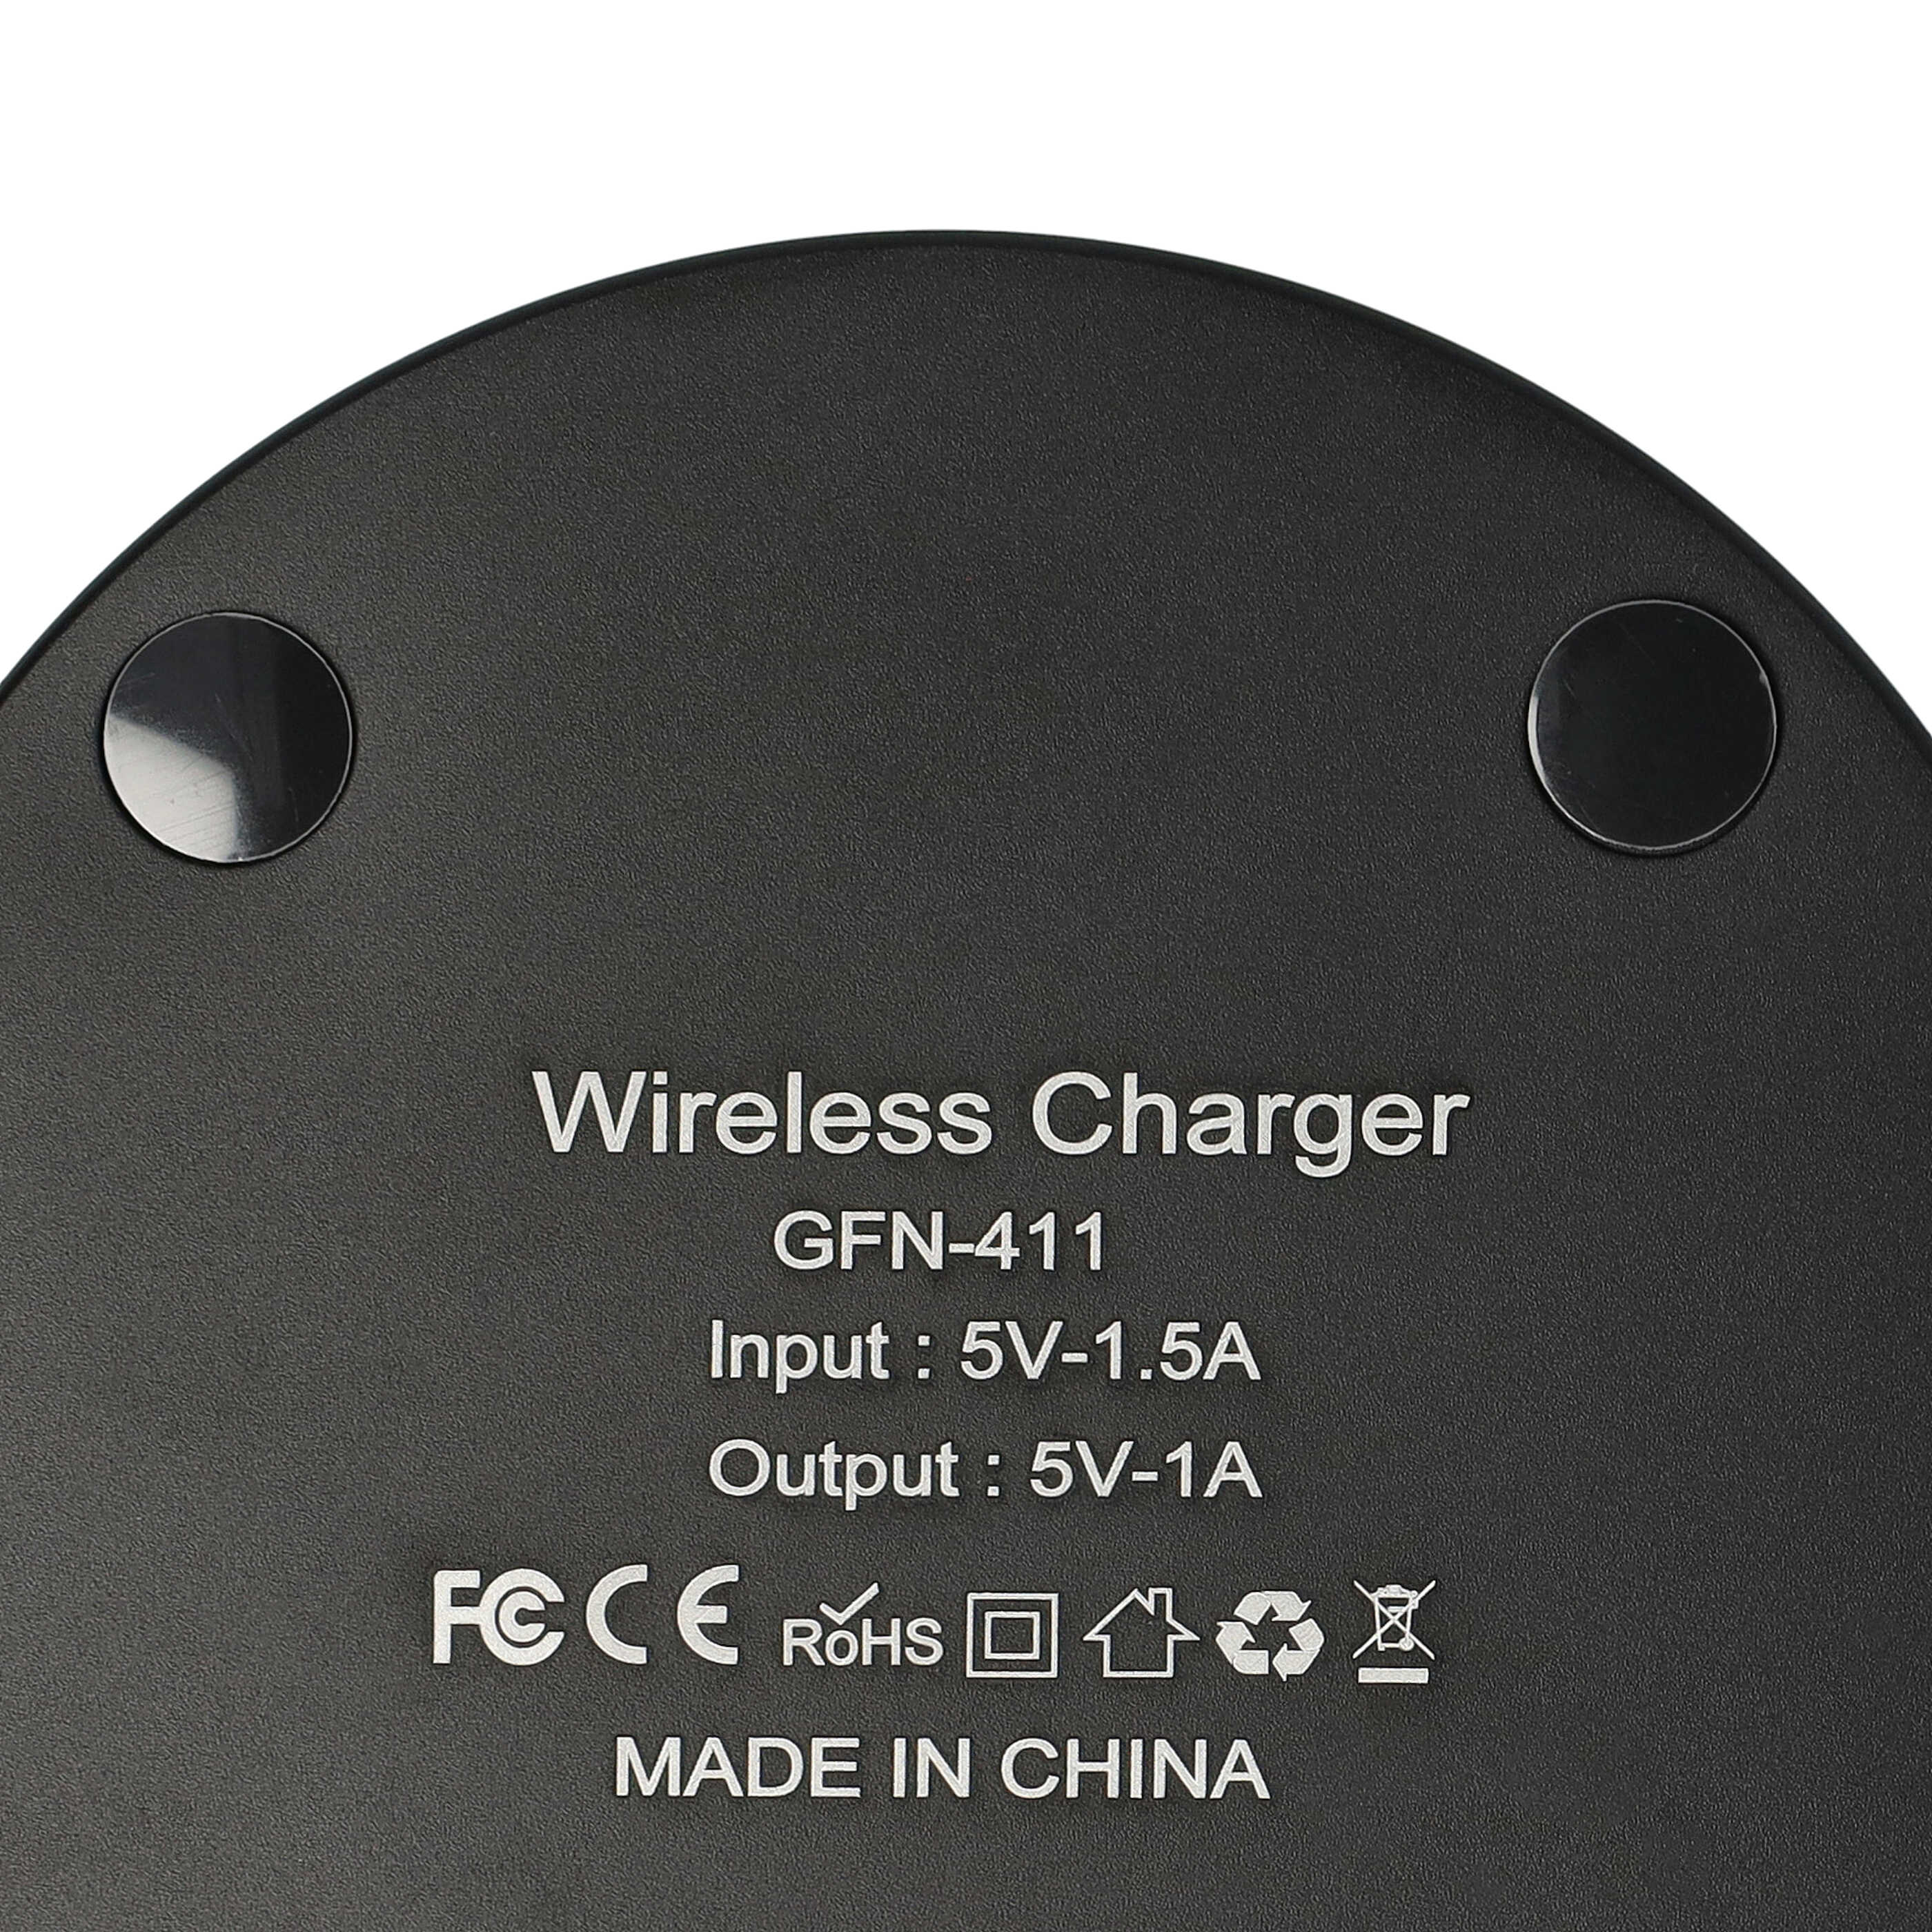 Ładowarka do głośnika Sonos Roam, Roam SL - podstawka + kabel, 100 cm, czarny